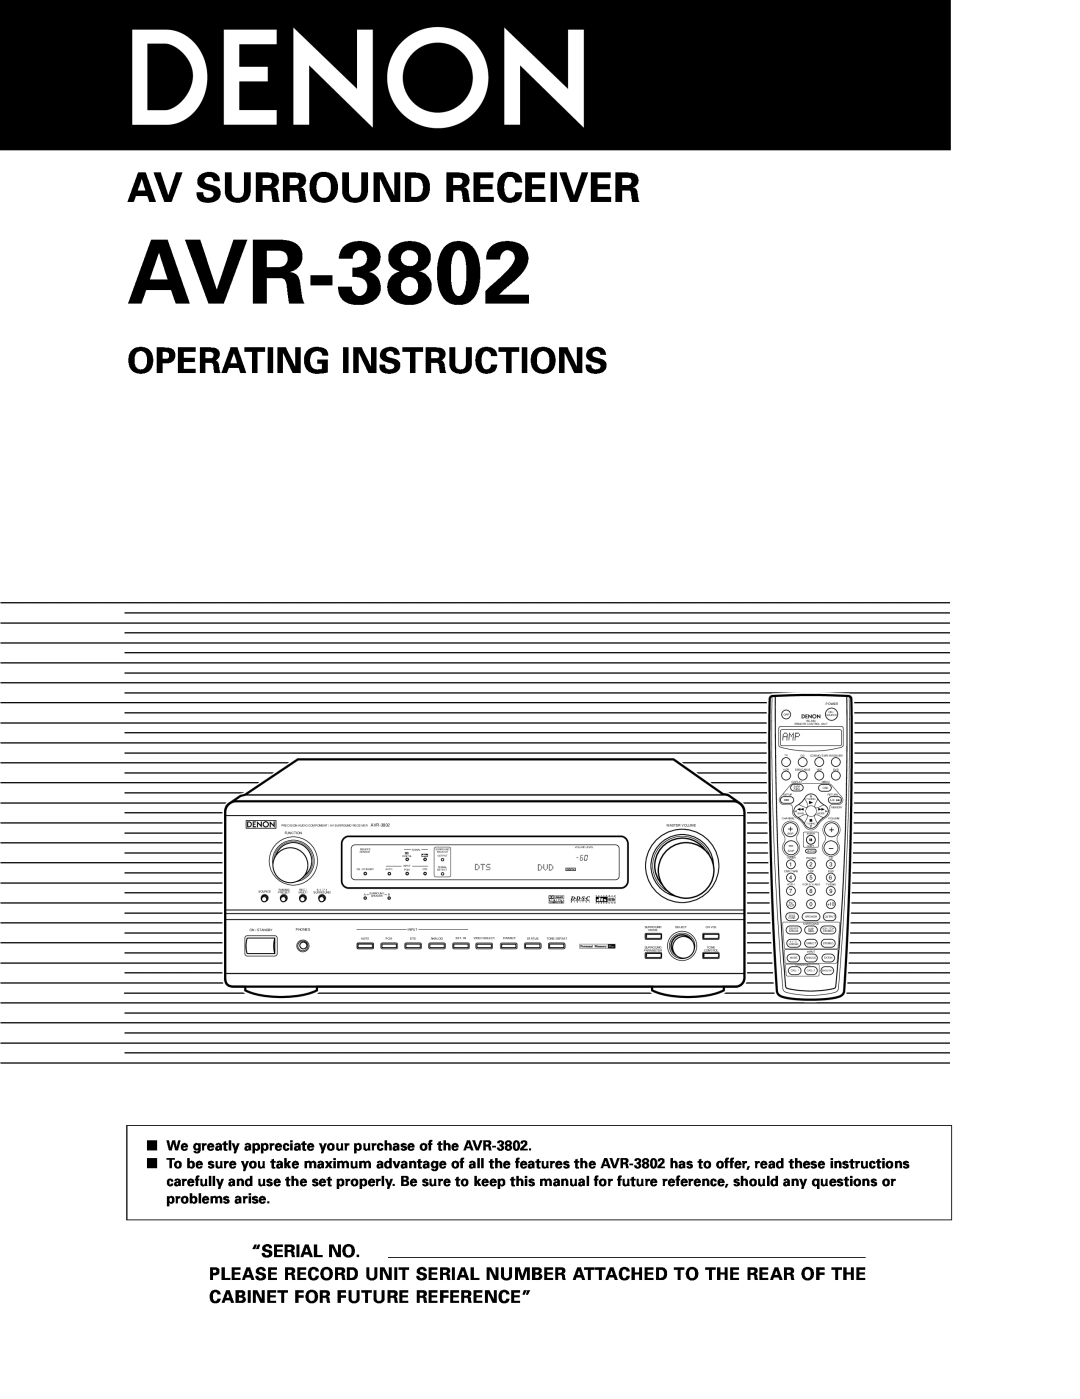 Denon AVR-3802 manual Operating Instructions, “Serial No, Av Surround Receiver 